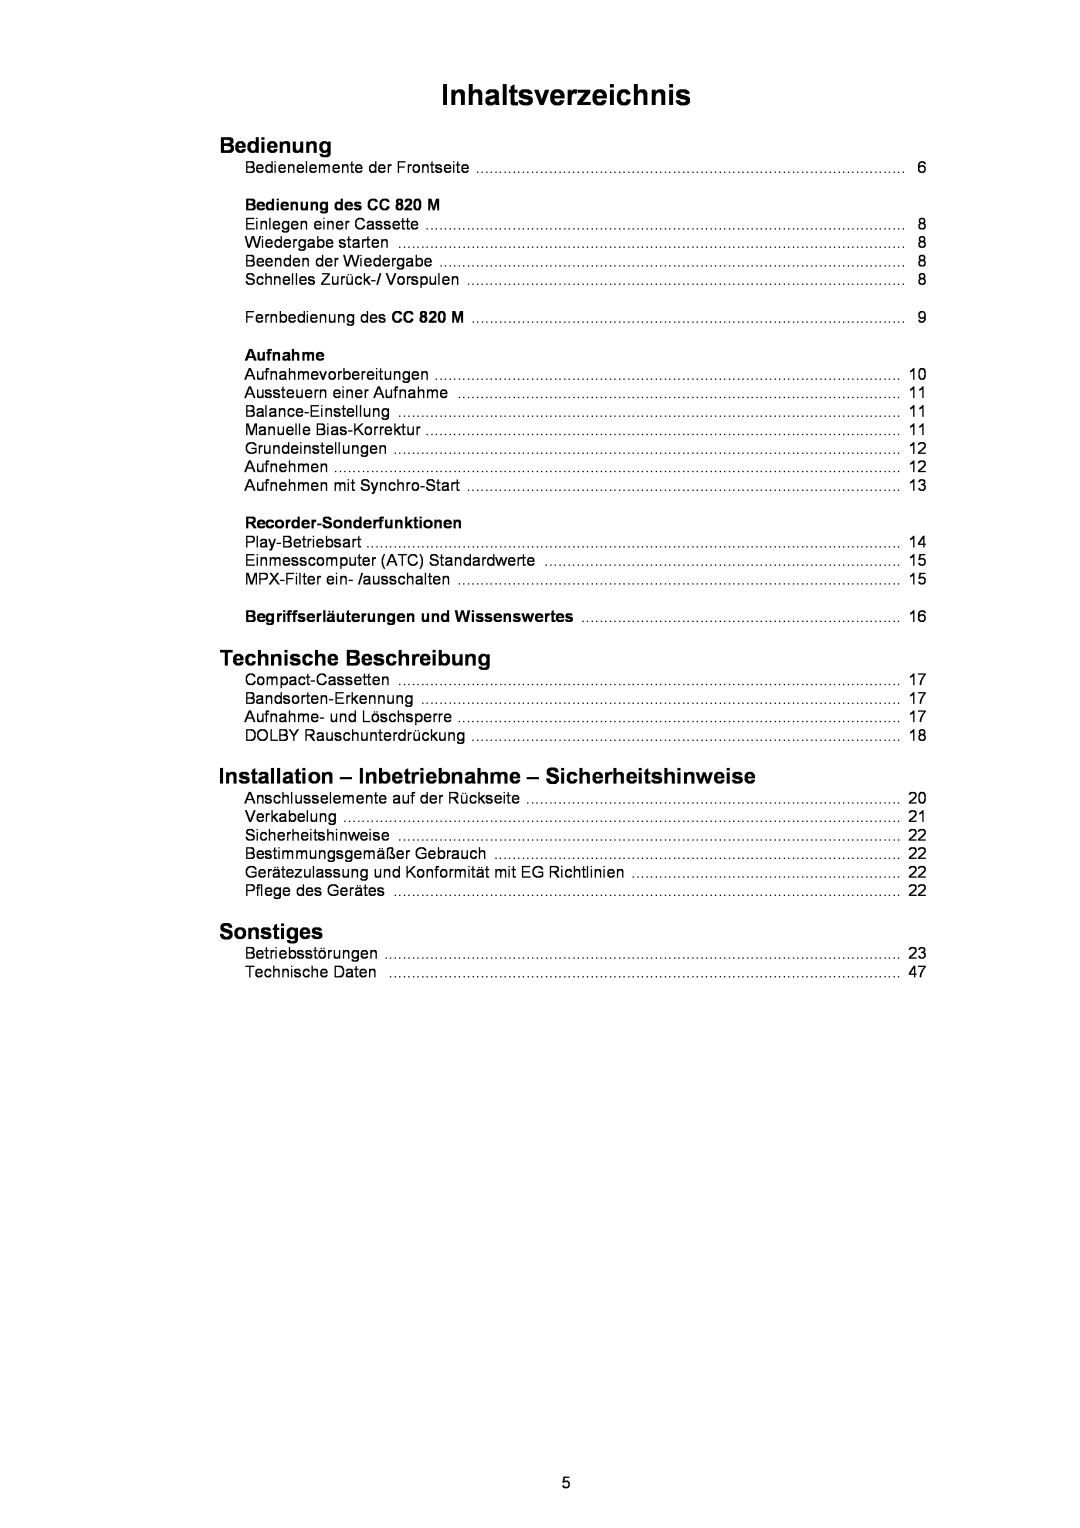 T+A Elektroakustik CC 820 M user manual Inhaltsverzeichnis, Bedienung, Technische Beschreibung, Sonstiges 